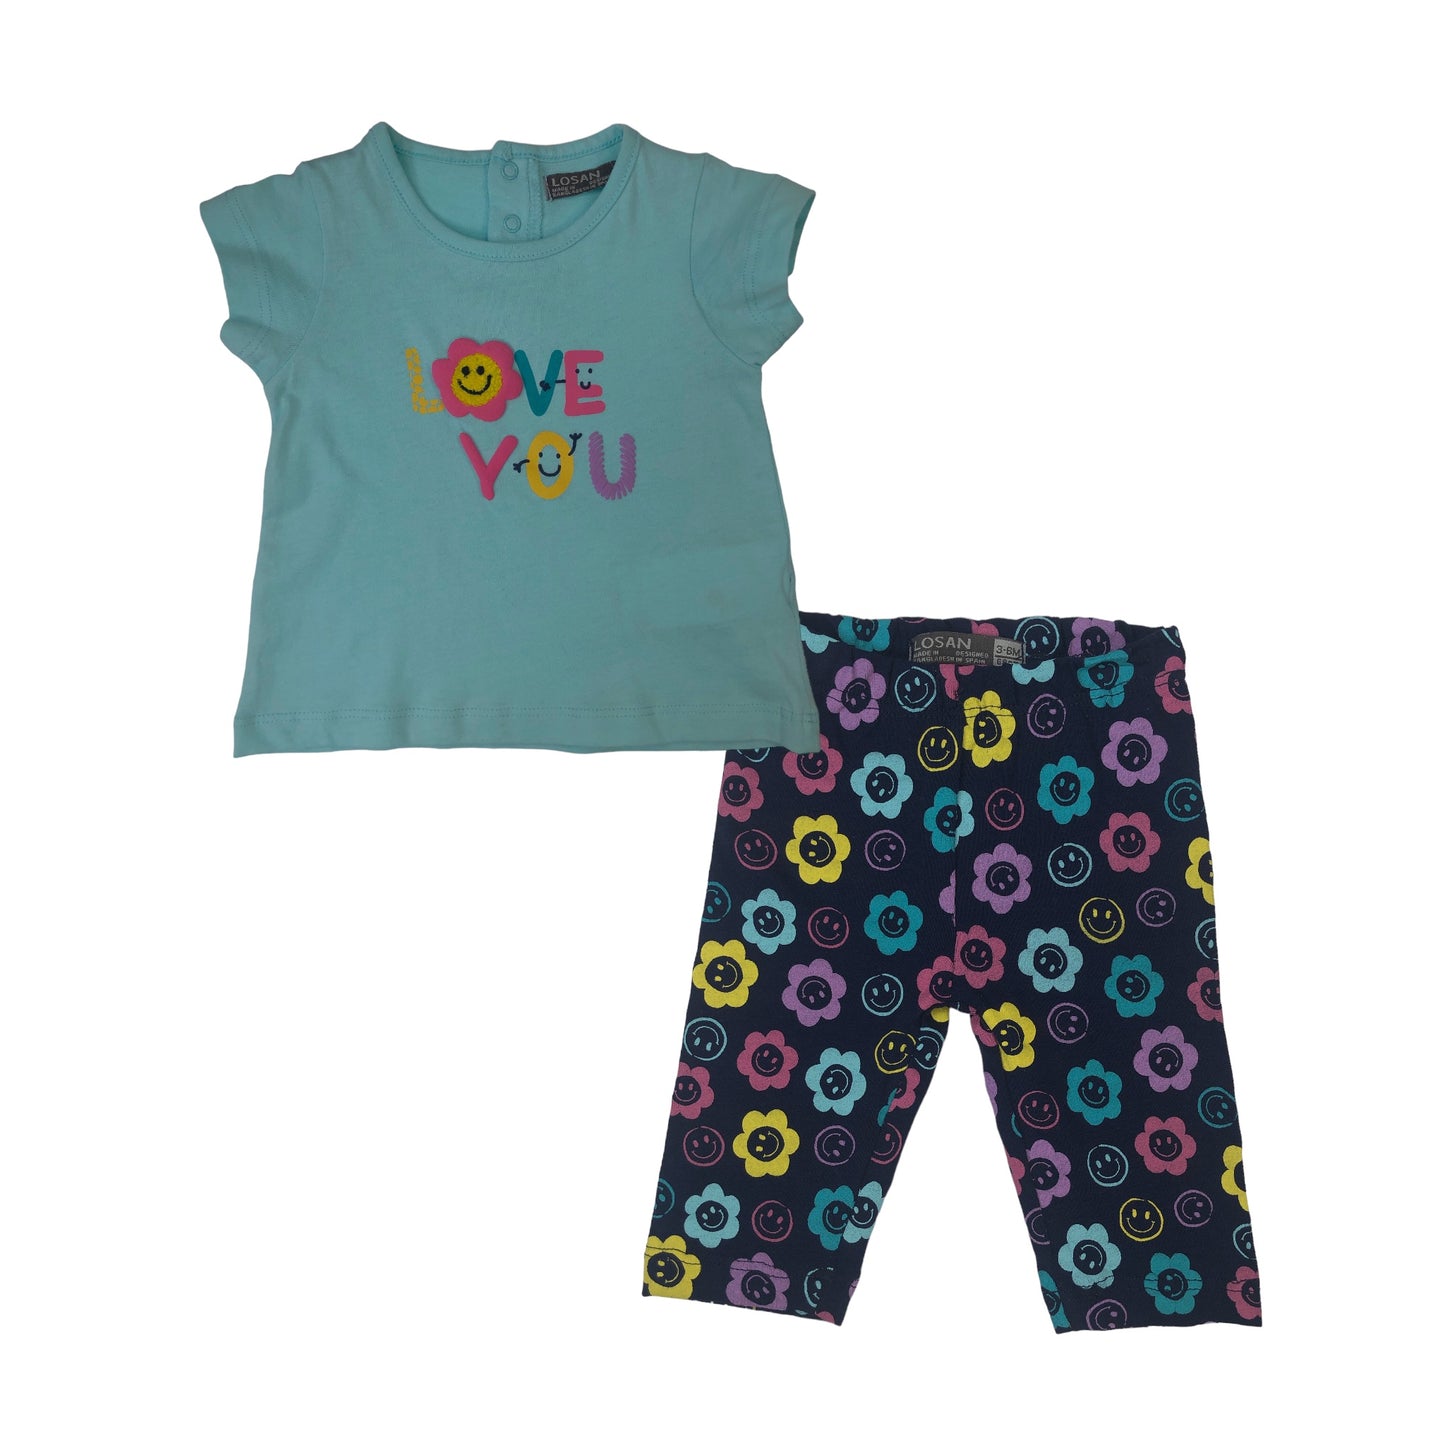 Conjunto de camiseta manga corta "LOVE YOU" y pantalón para bebé niña Losan